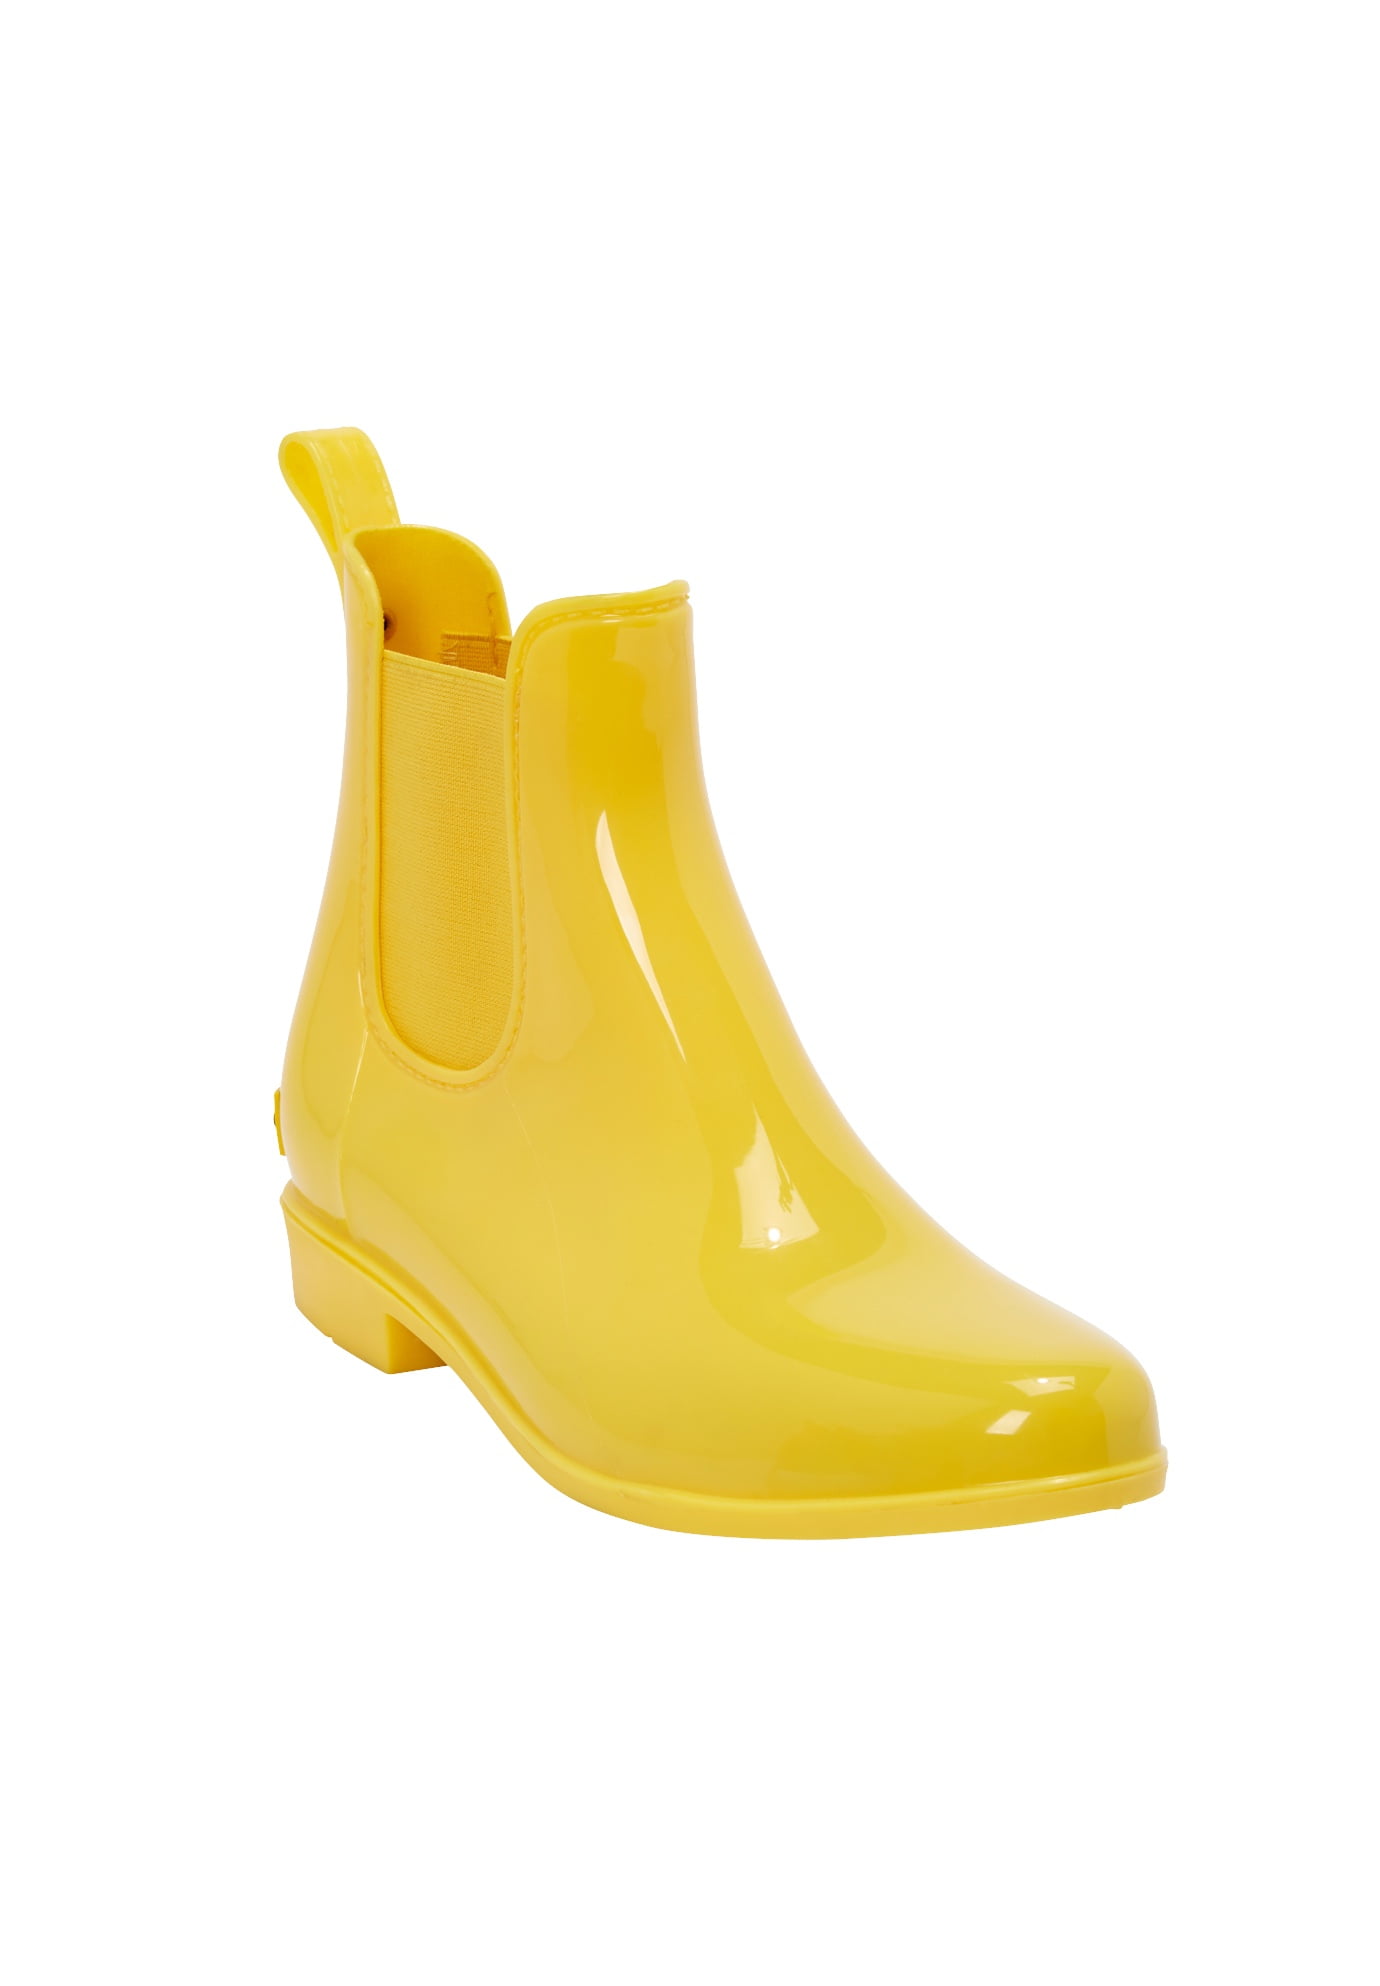 womens rain shoes wide width